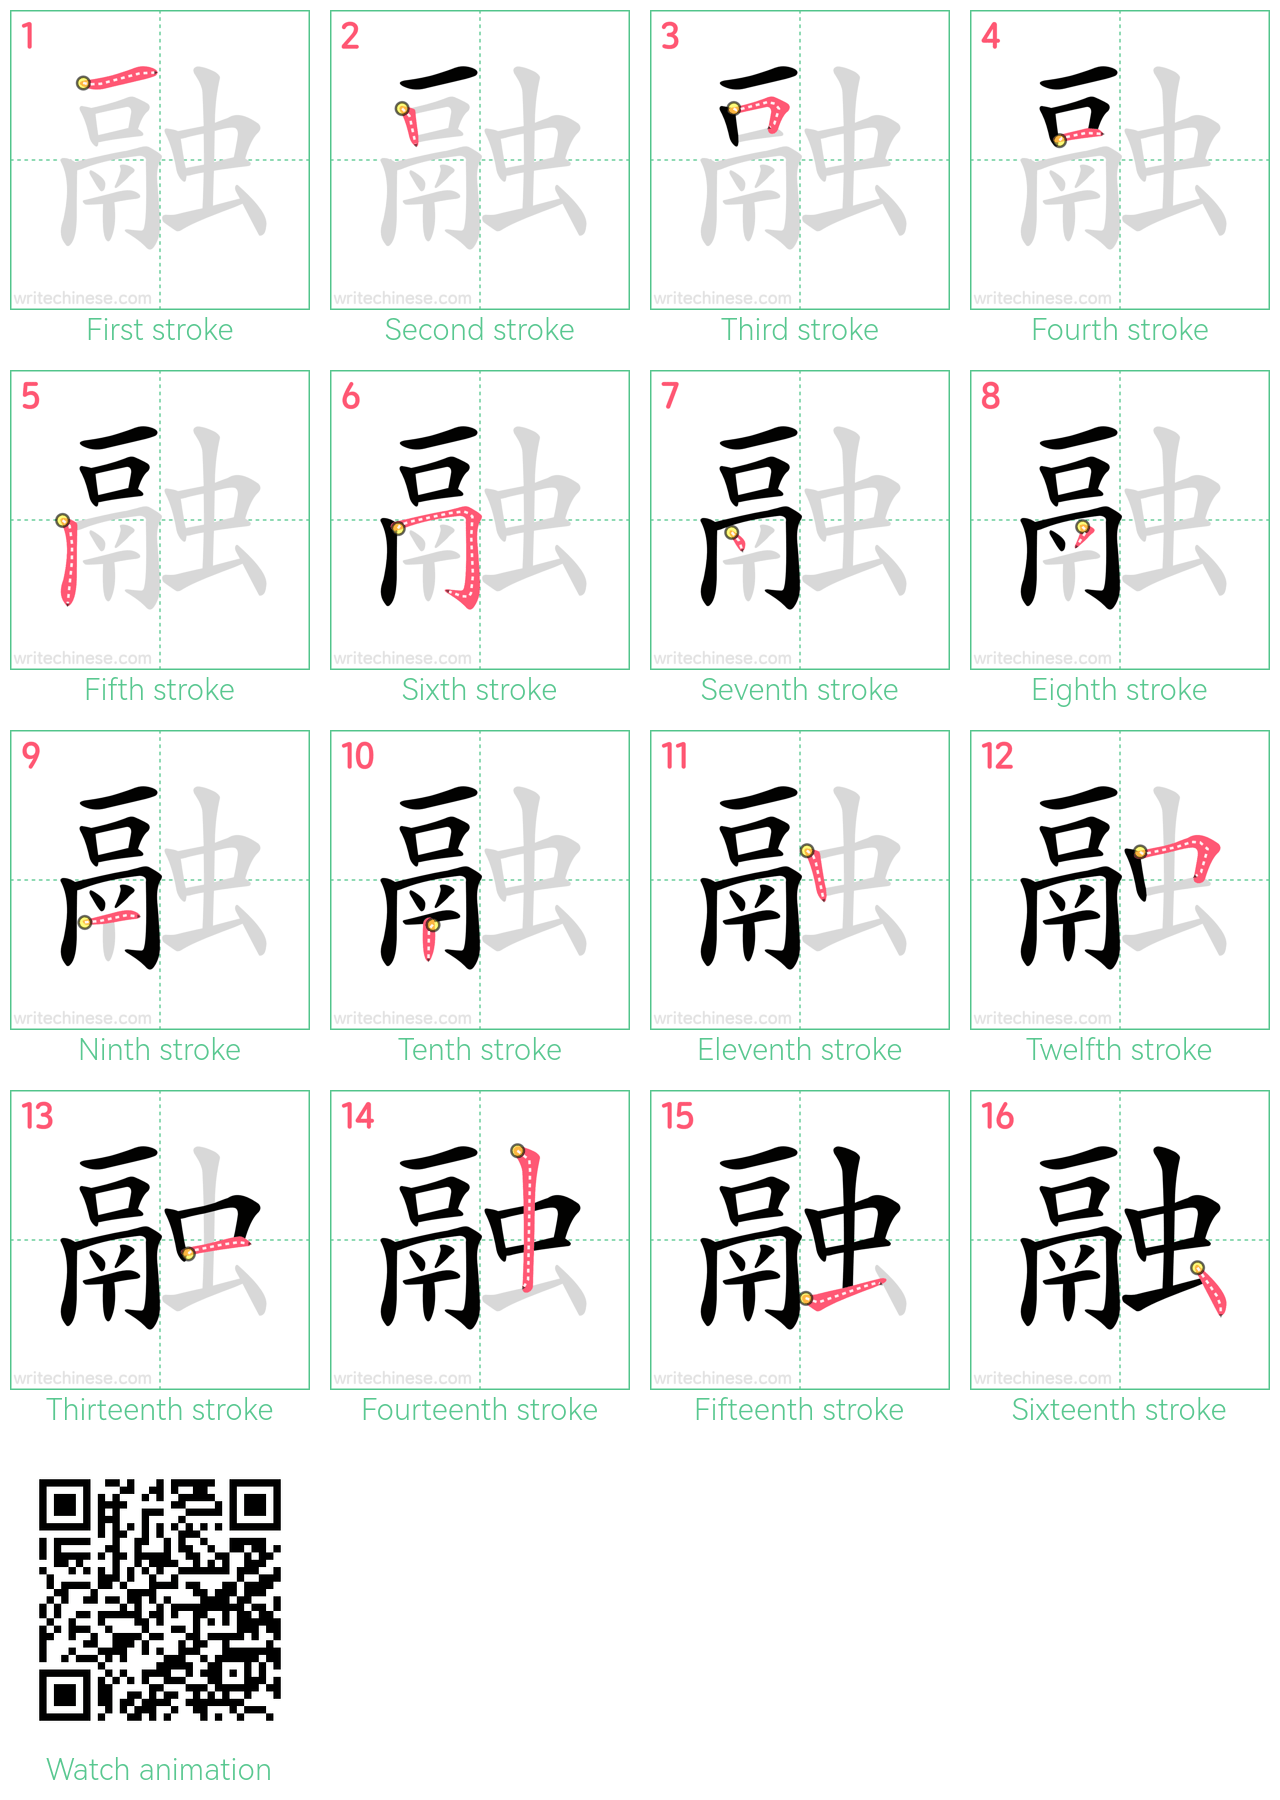 融 step-by-step stroke order diagrams